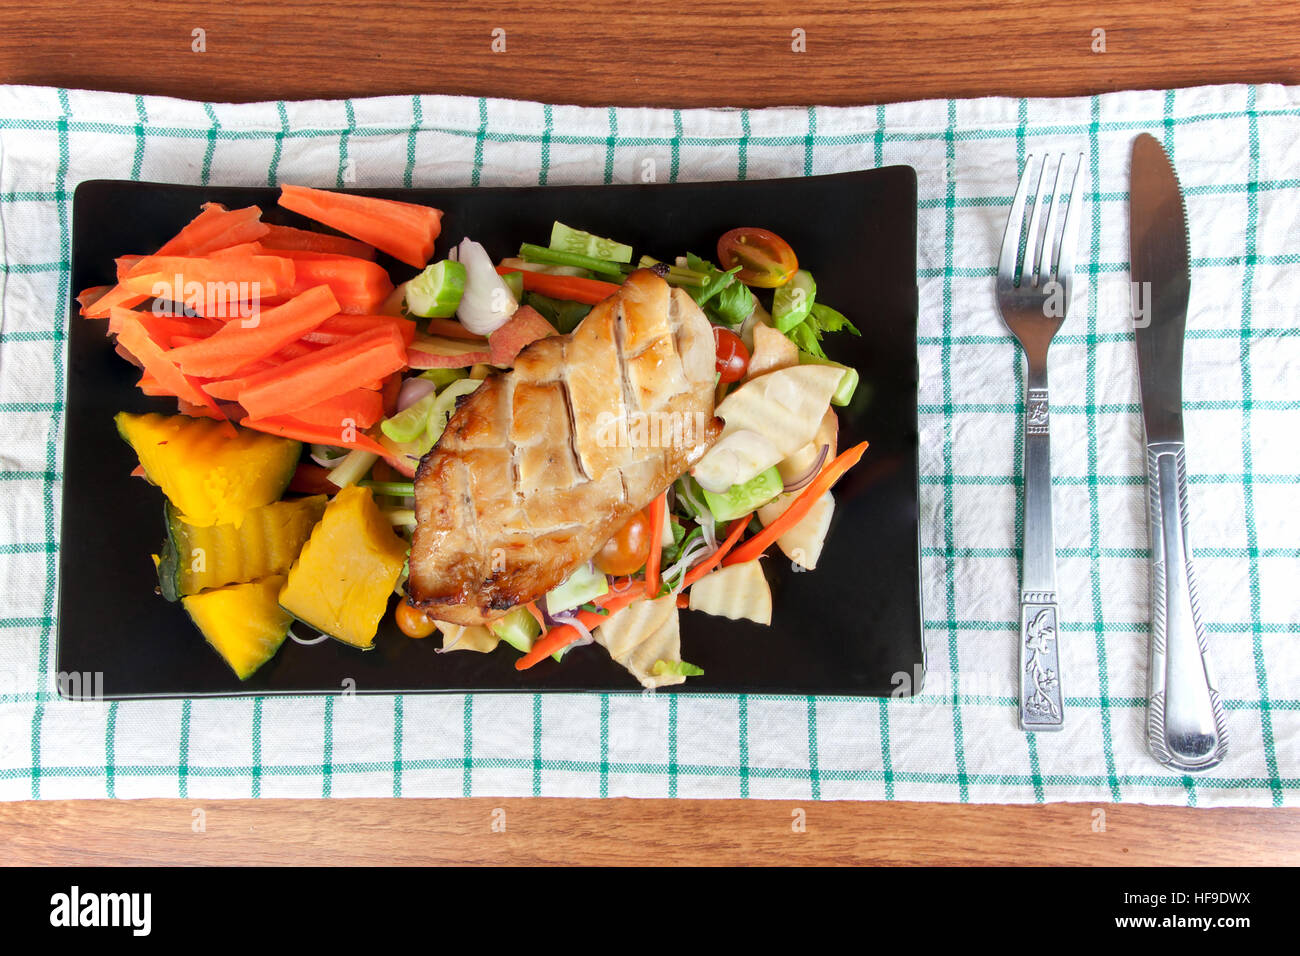 Steak de poulet grillé aux épices et de légumes sur la lave noire, saine alimentation, les repas. Banque D'Images